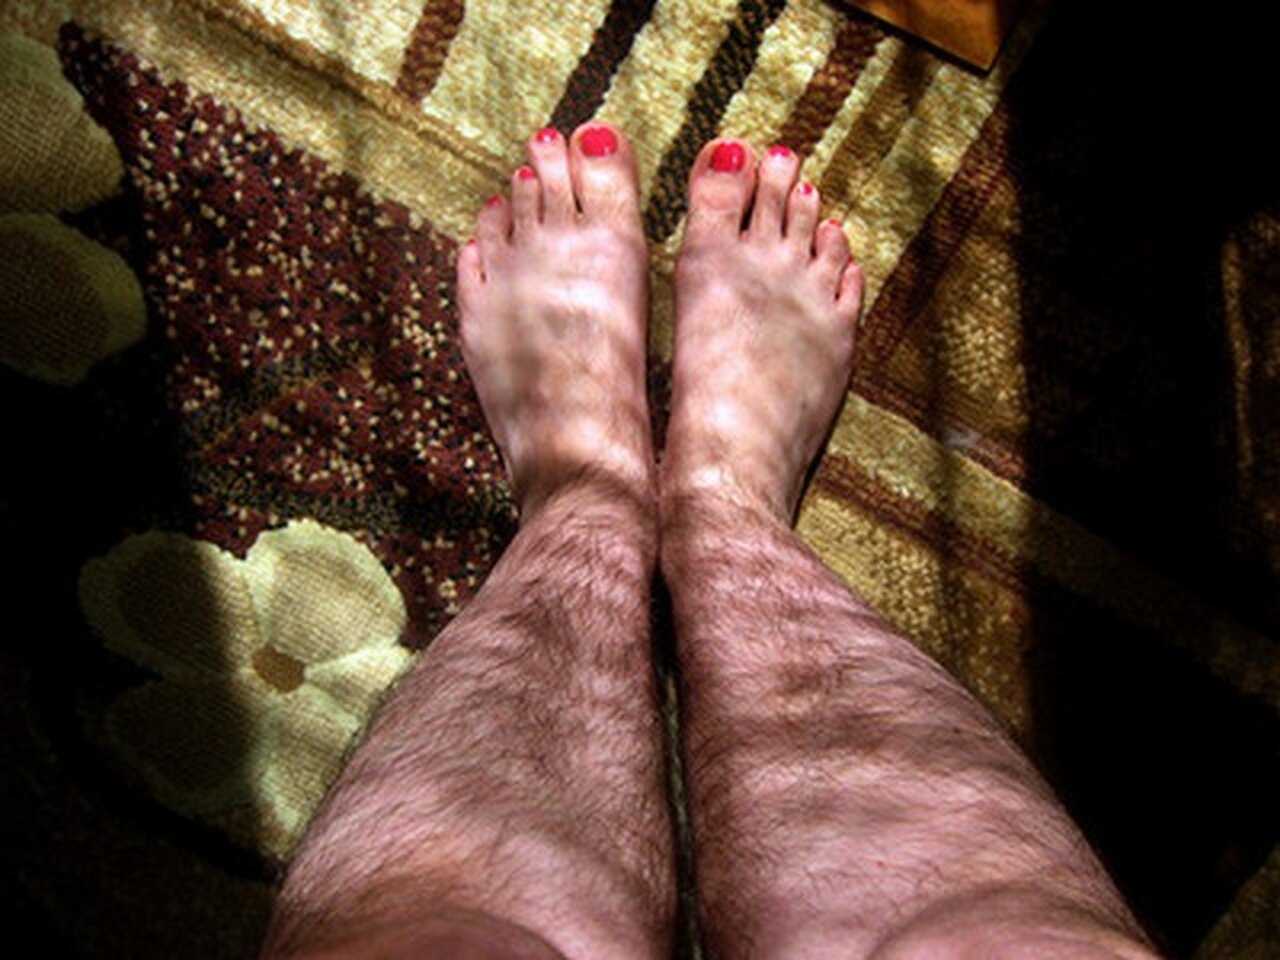 Сонник видеть ноги. Мохнатые женские ножки. Волосати женские ножки. Красивые девушки с волосатыми ногами.